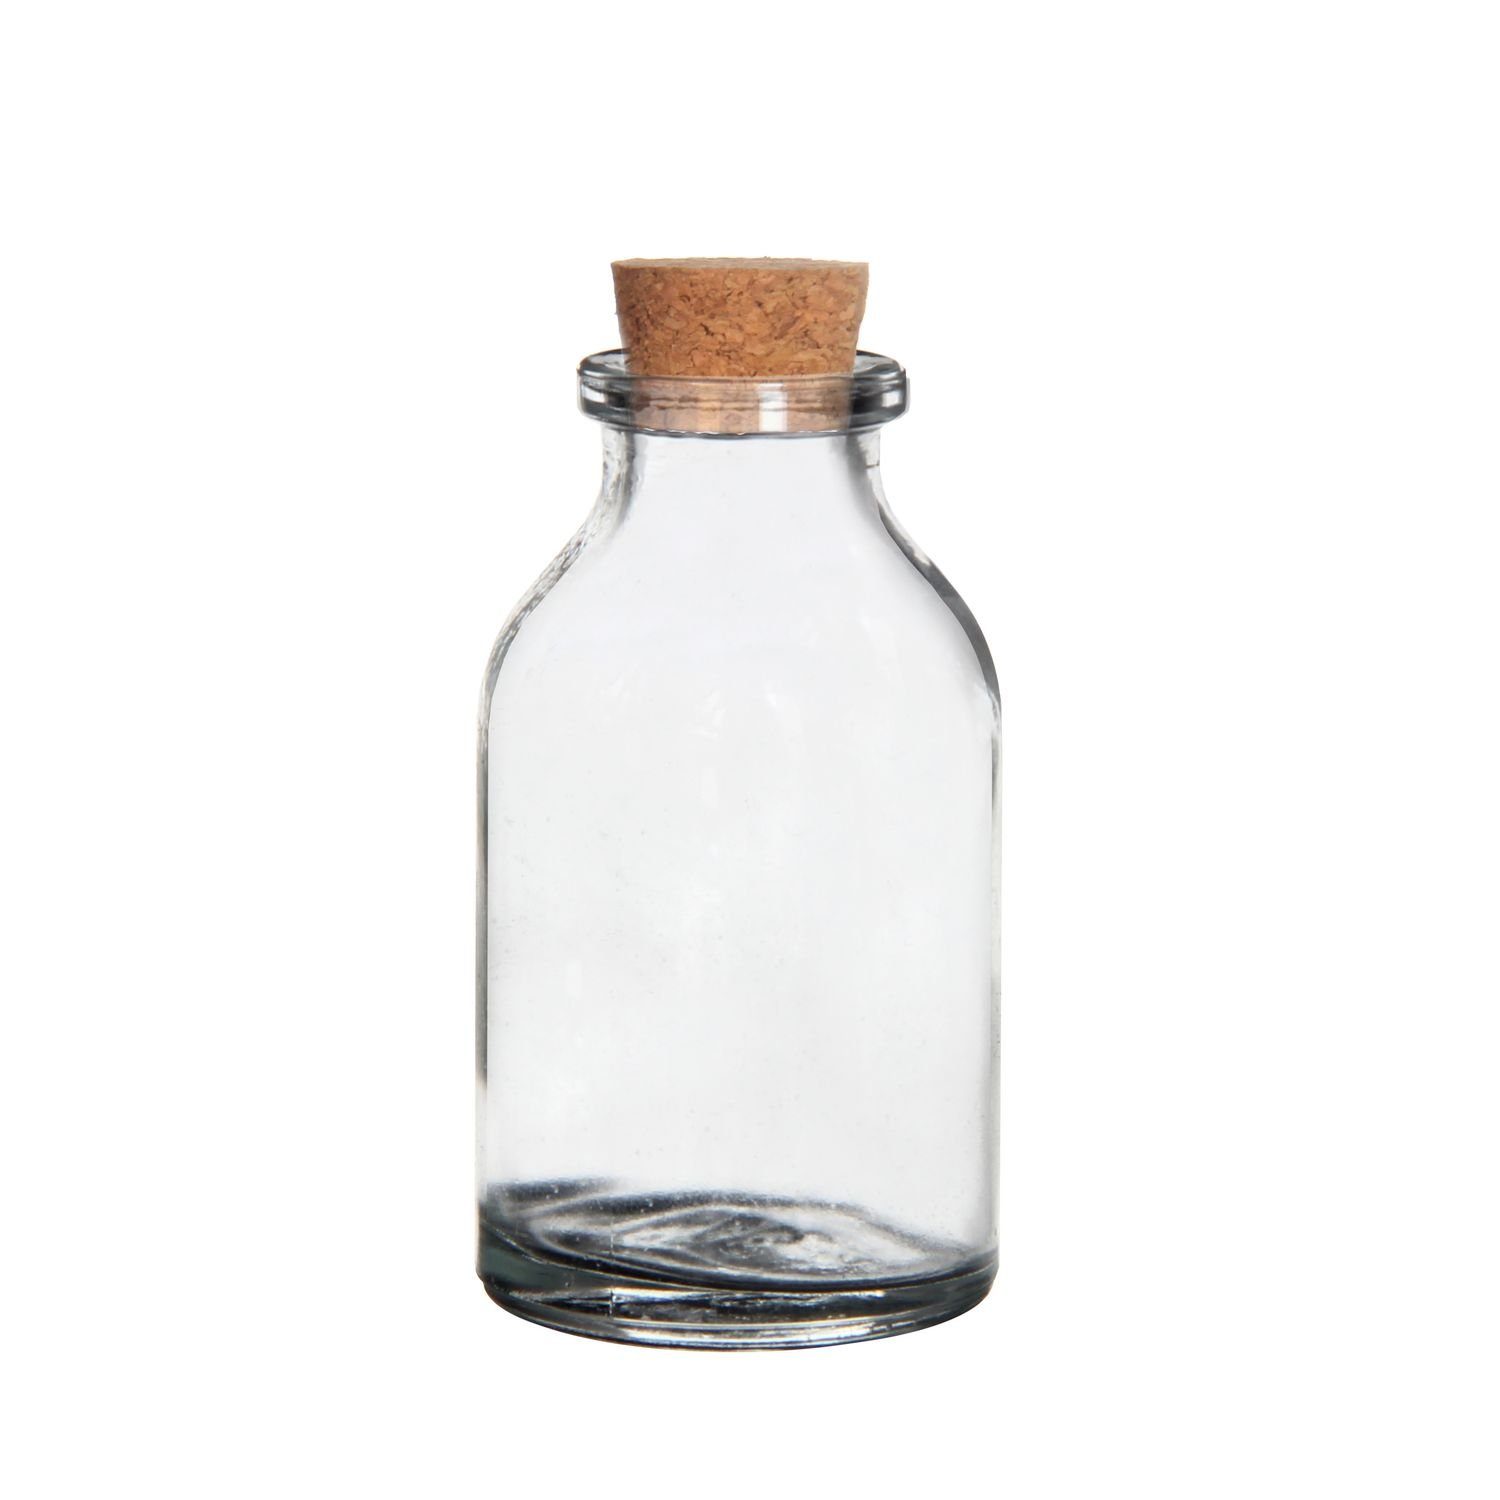 NaDeco Dekovase Probierflaschen mit Korken 20ml, 15 Stück, Größe 6x3cm Likörflaschen | Dekovasen